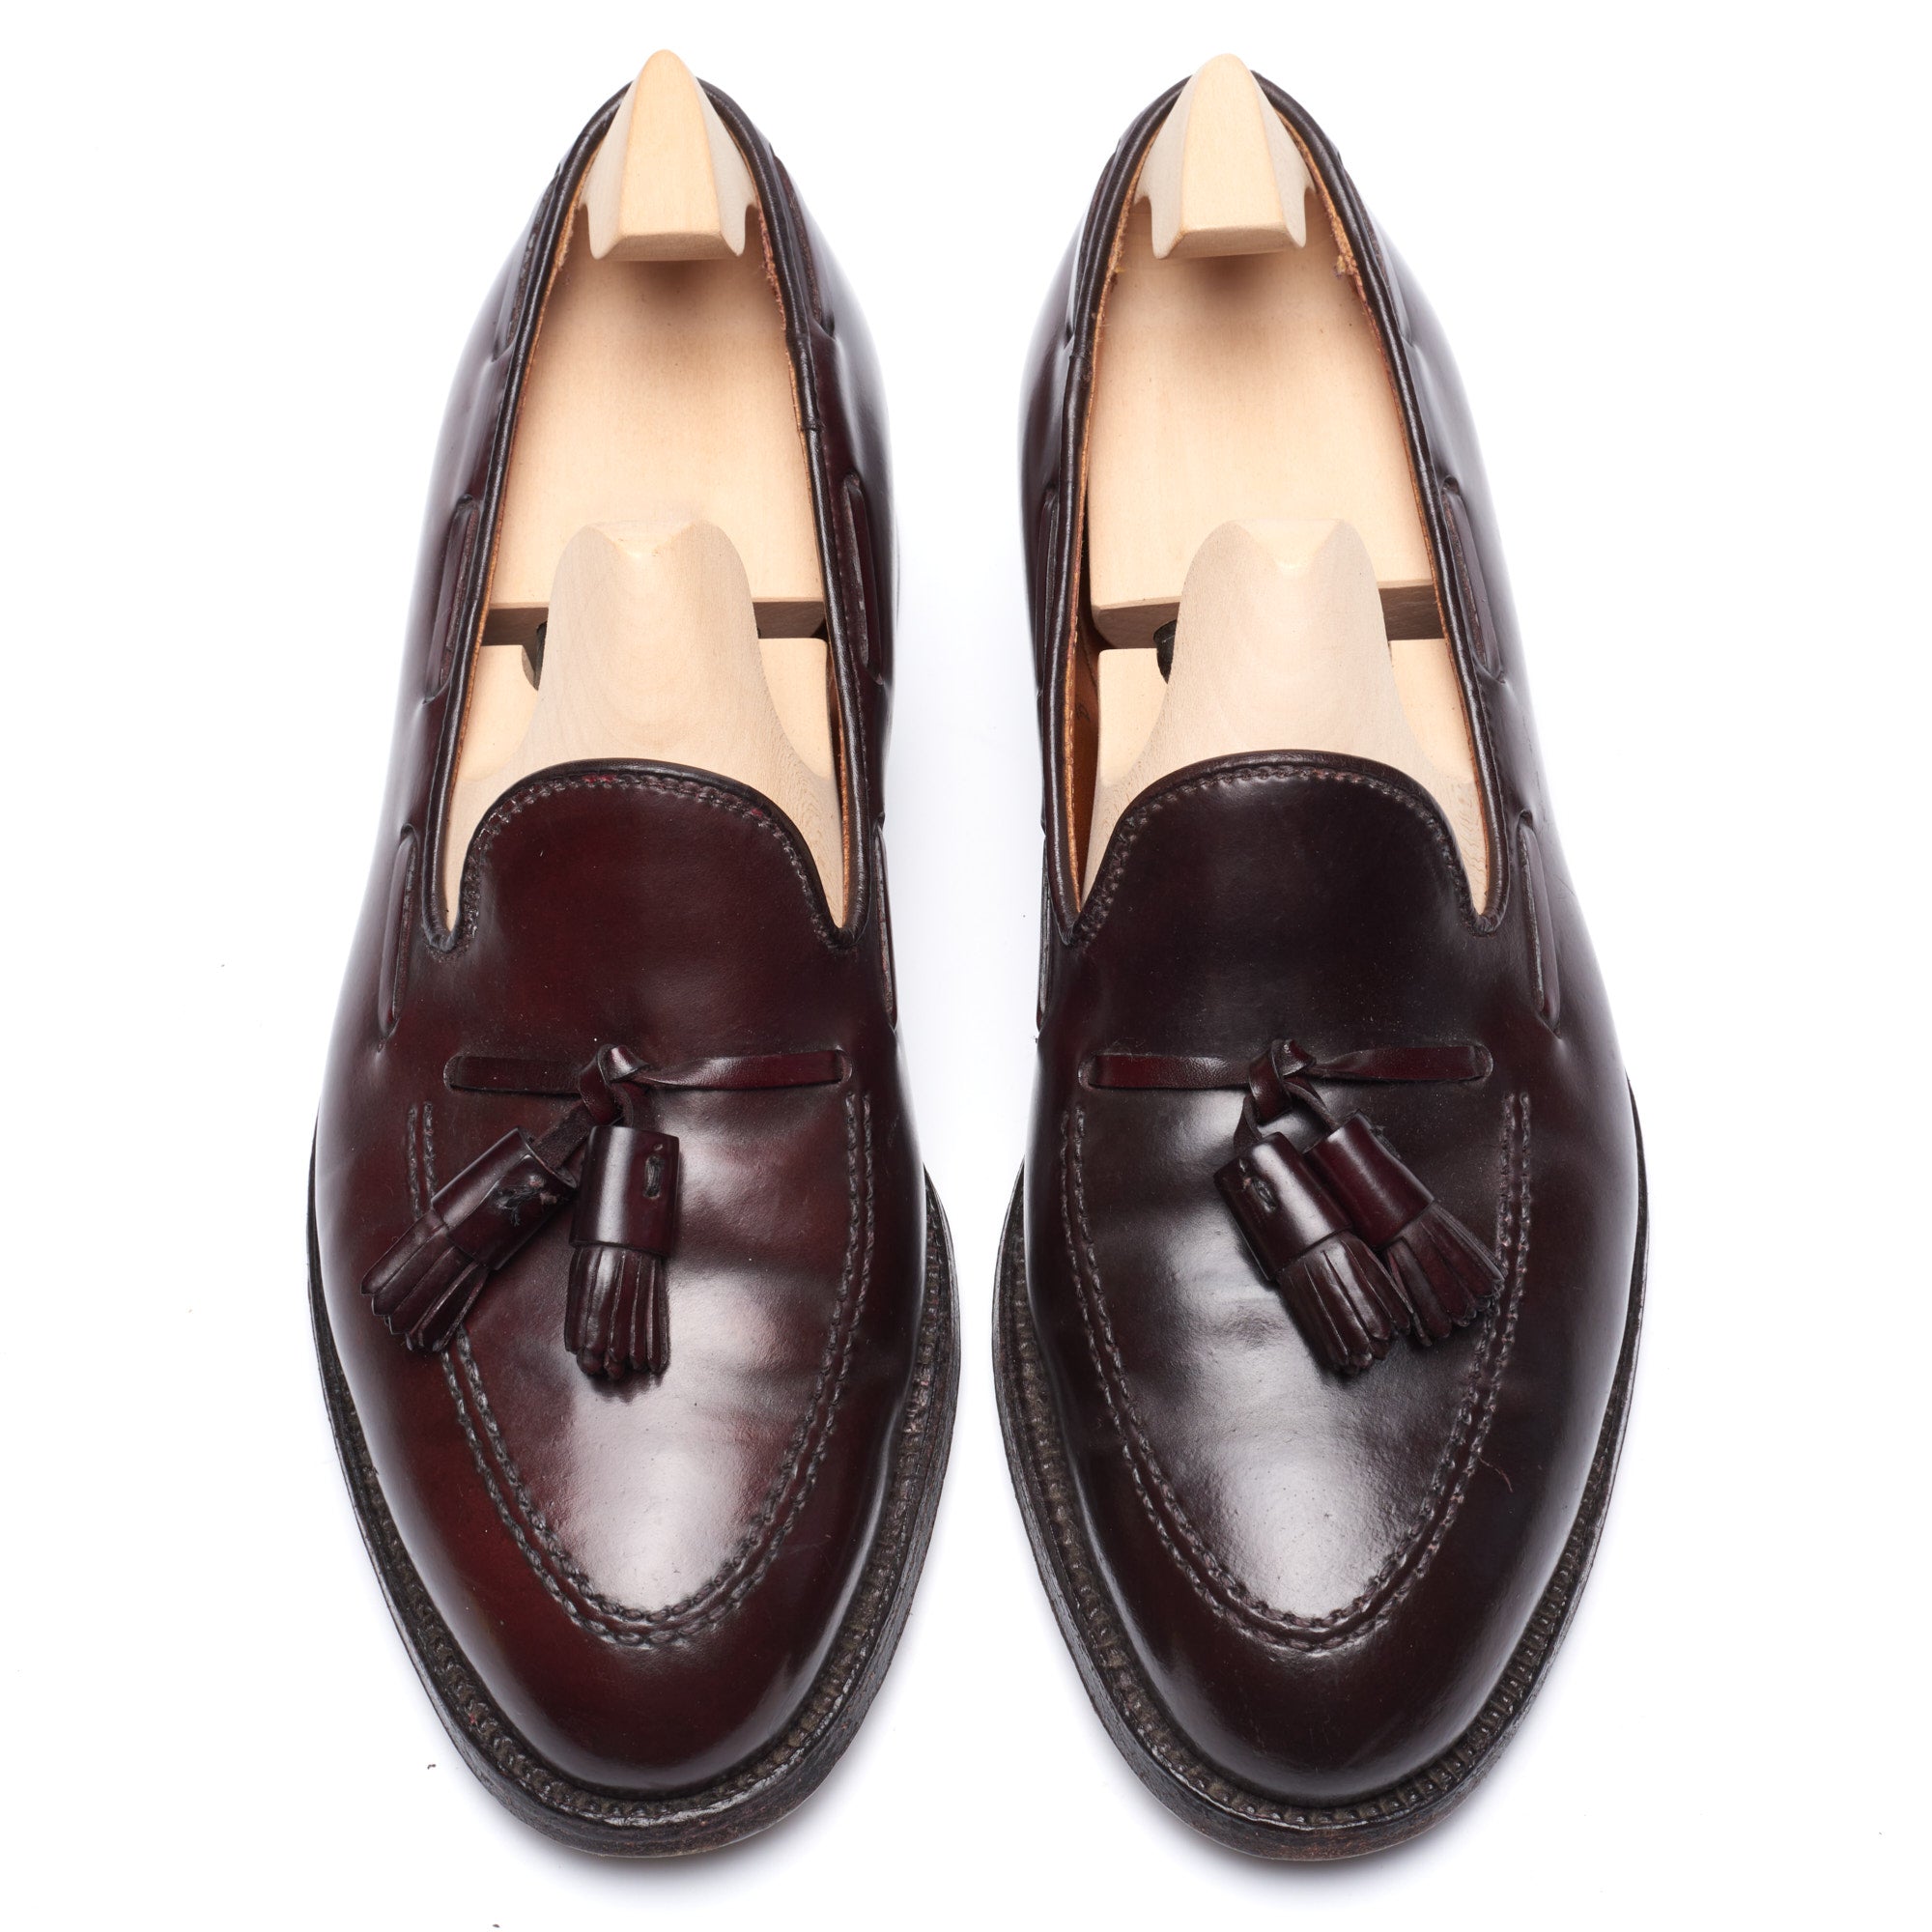 ALDEN 563 Burgundy #8 Horween Shell Cordovan Tassel Loafer Shoes US 8.5 B/D